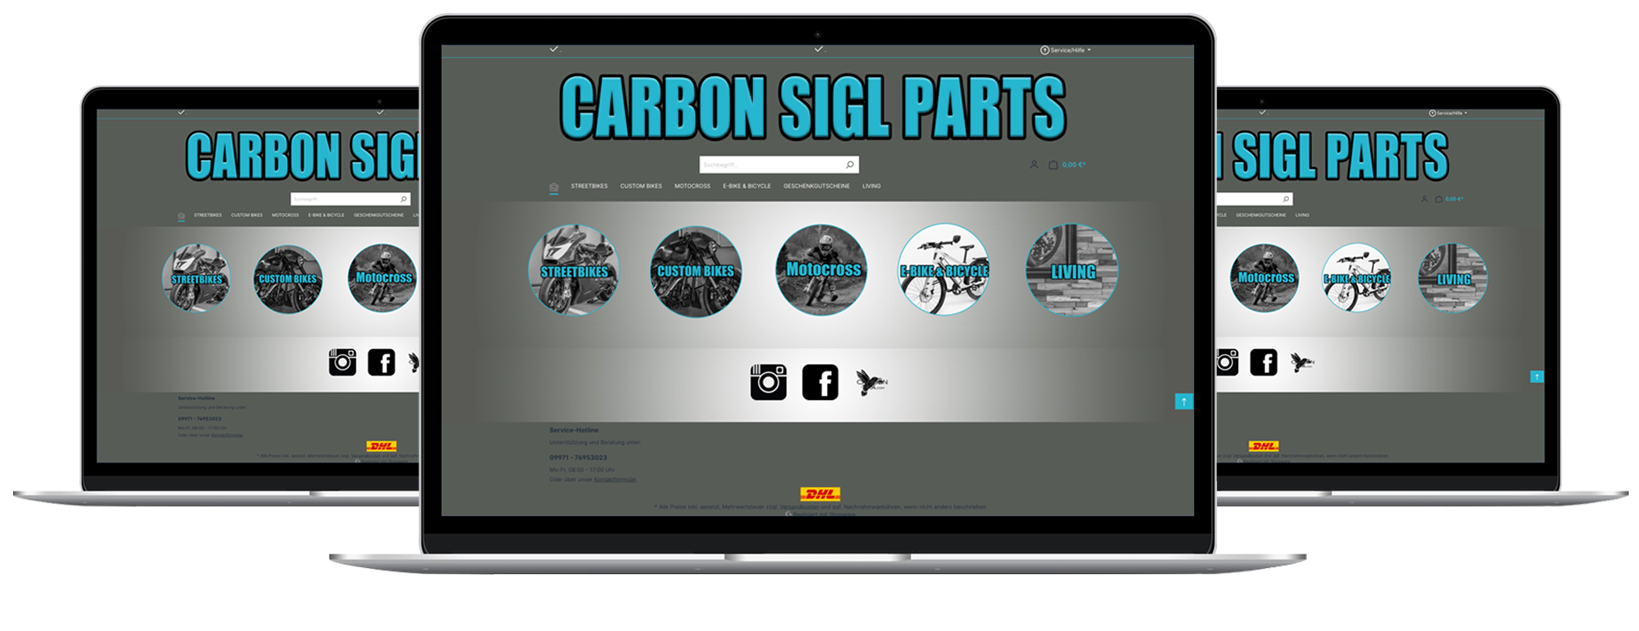 Mockup Website des Online Shops von Carbon Sigl